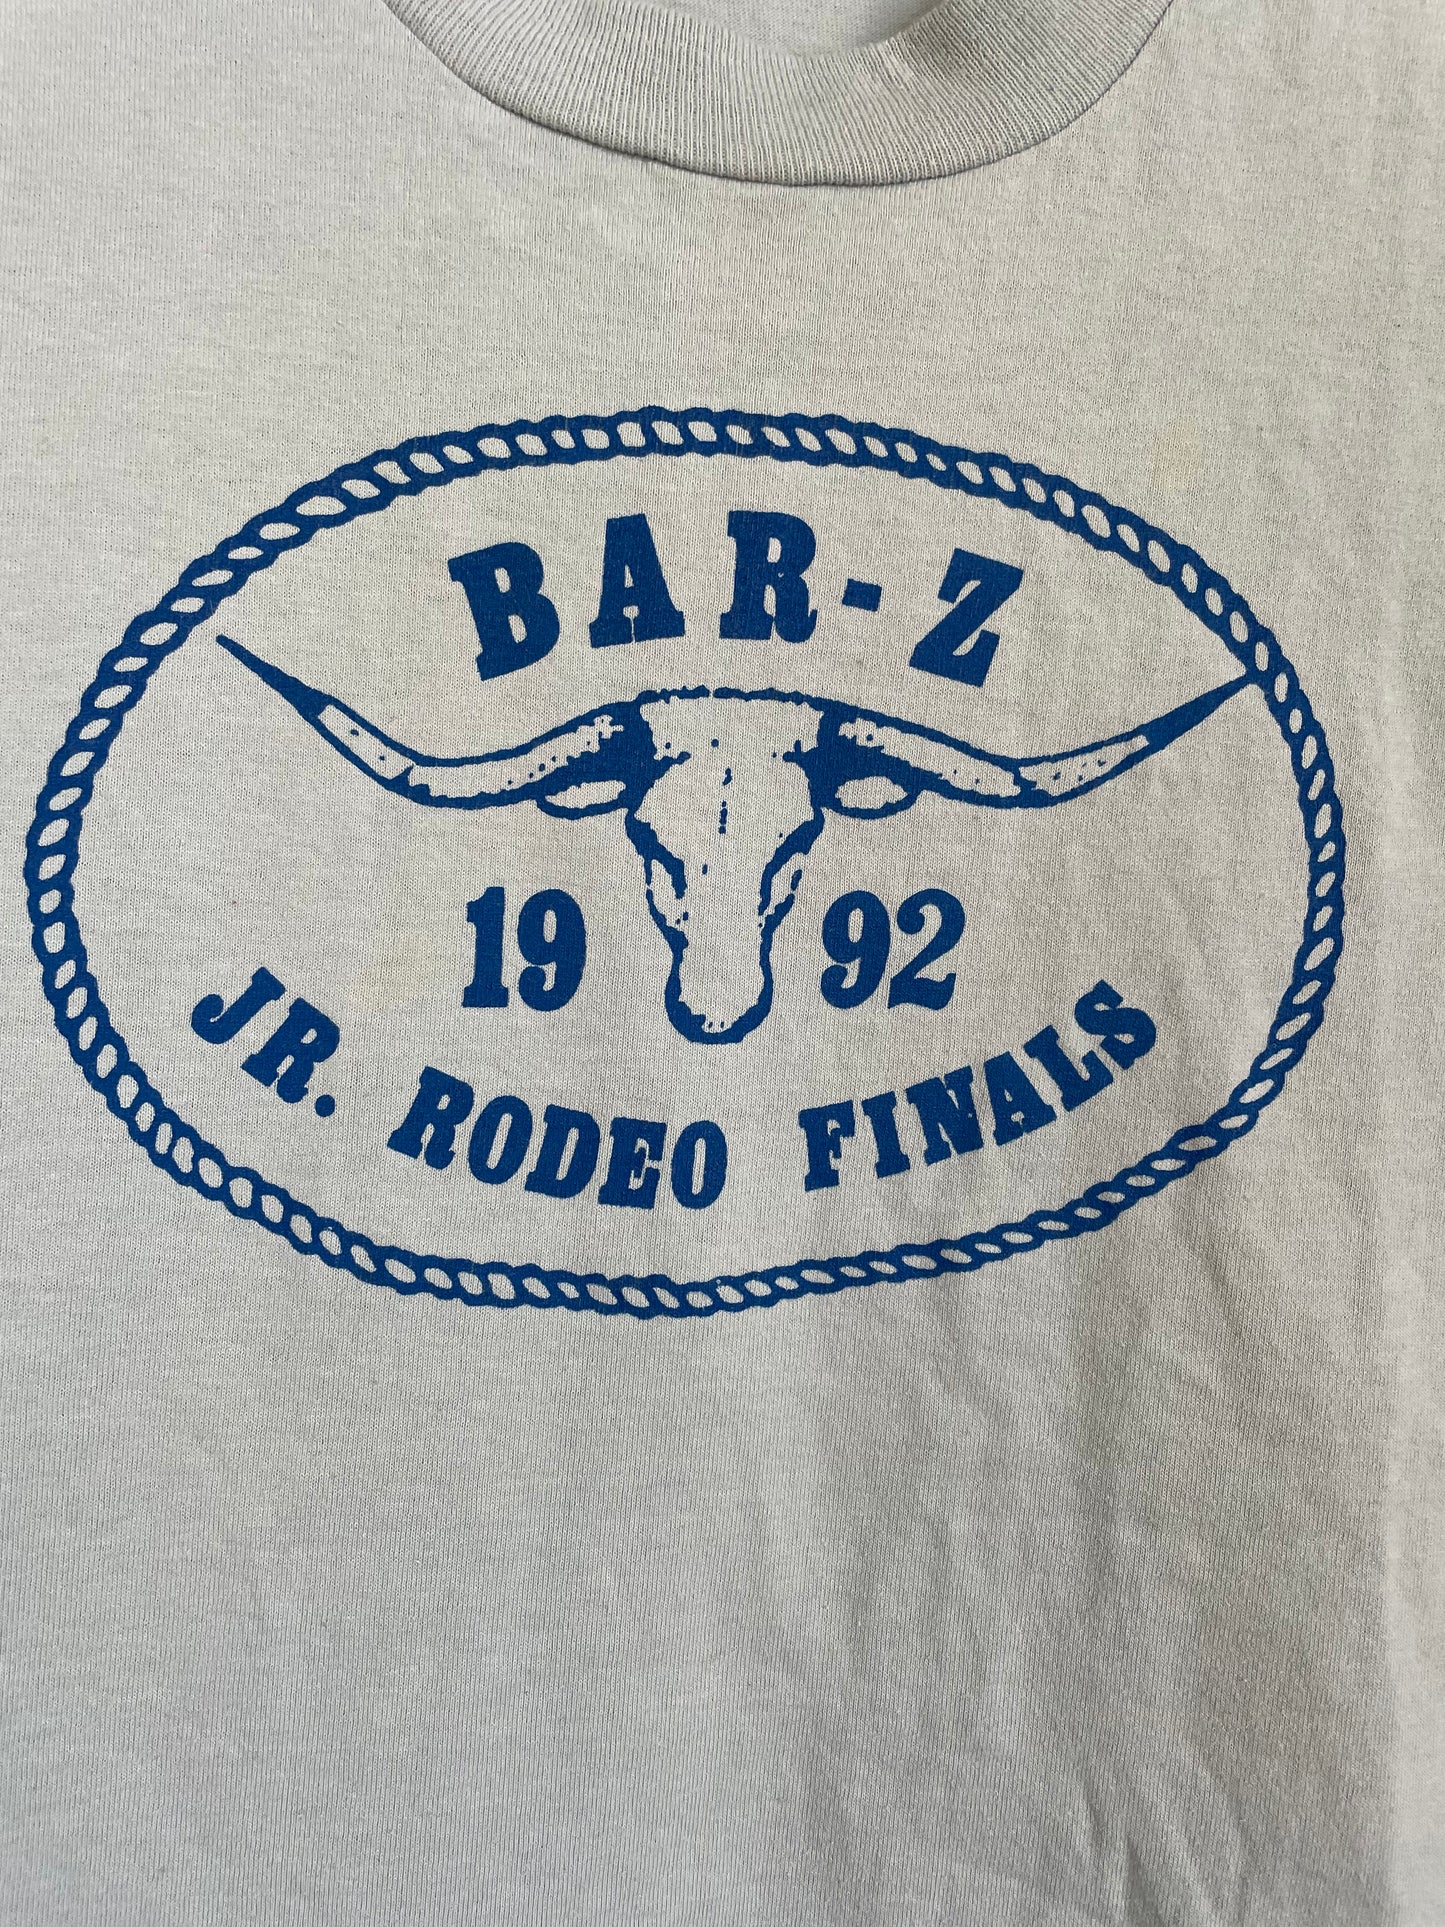 90s Bar-Z Jr. Rodeo Finals Tee